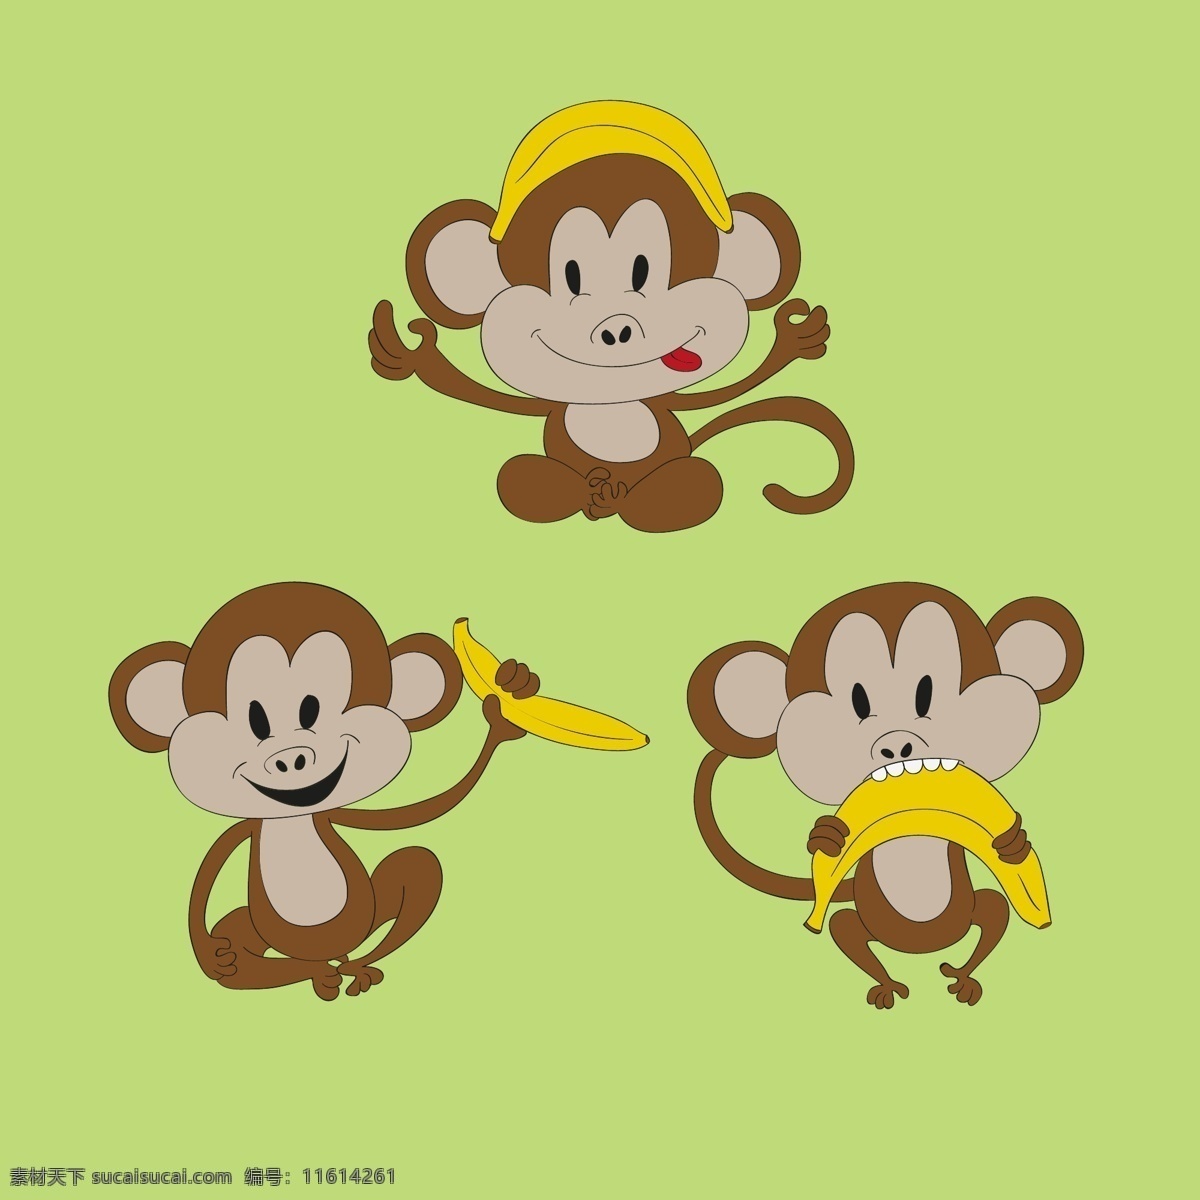 猴带香蕉 猴 带 香蕉 食品 婴儿 动物 性格 猴子 可爱 丛林 热带 搞笑 插图 动物园 野生动物园 野生 漫画 微笑 握住 最新矢量素材